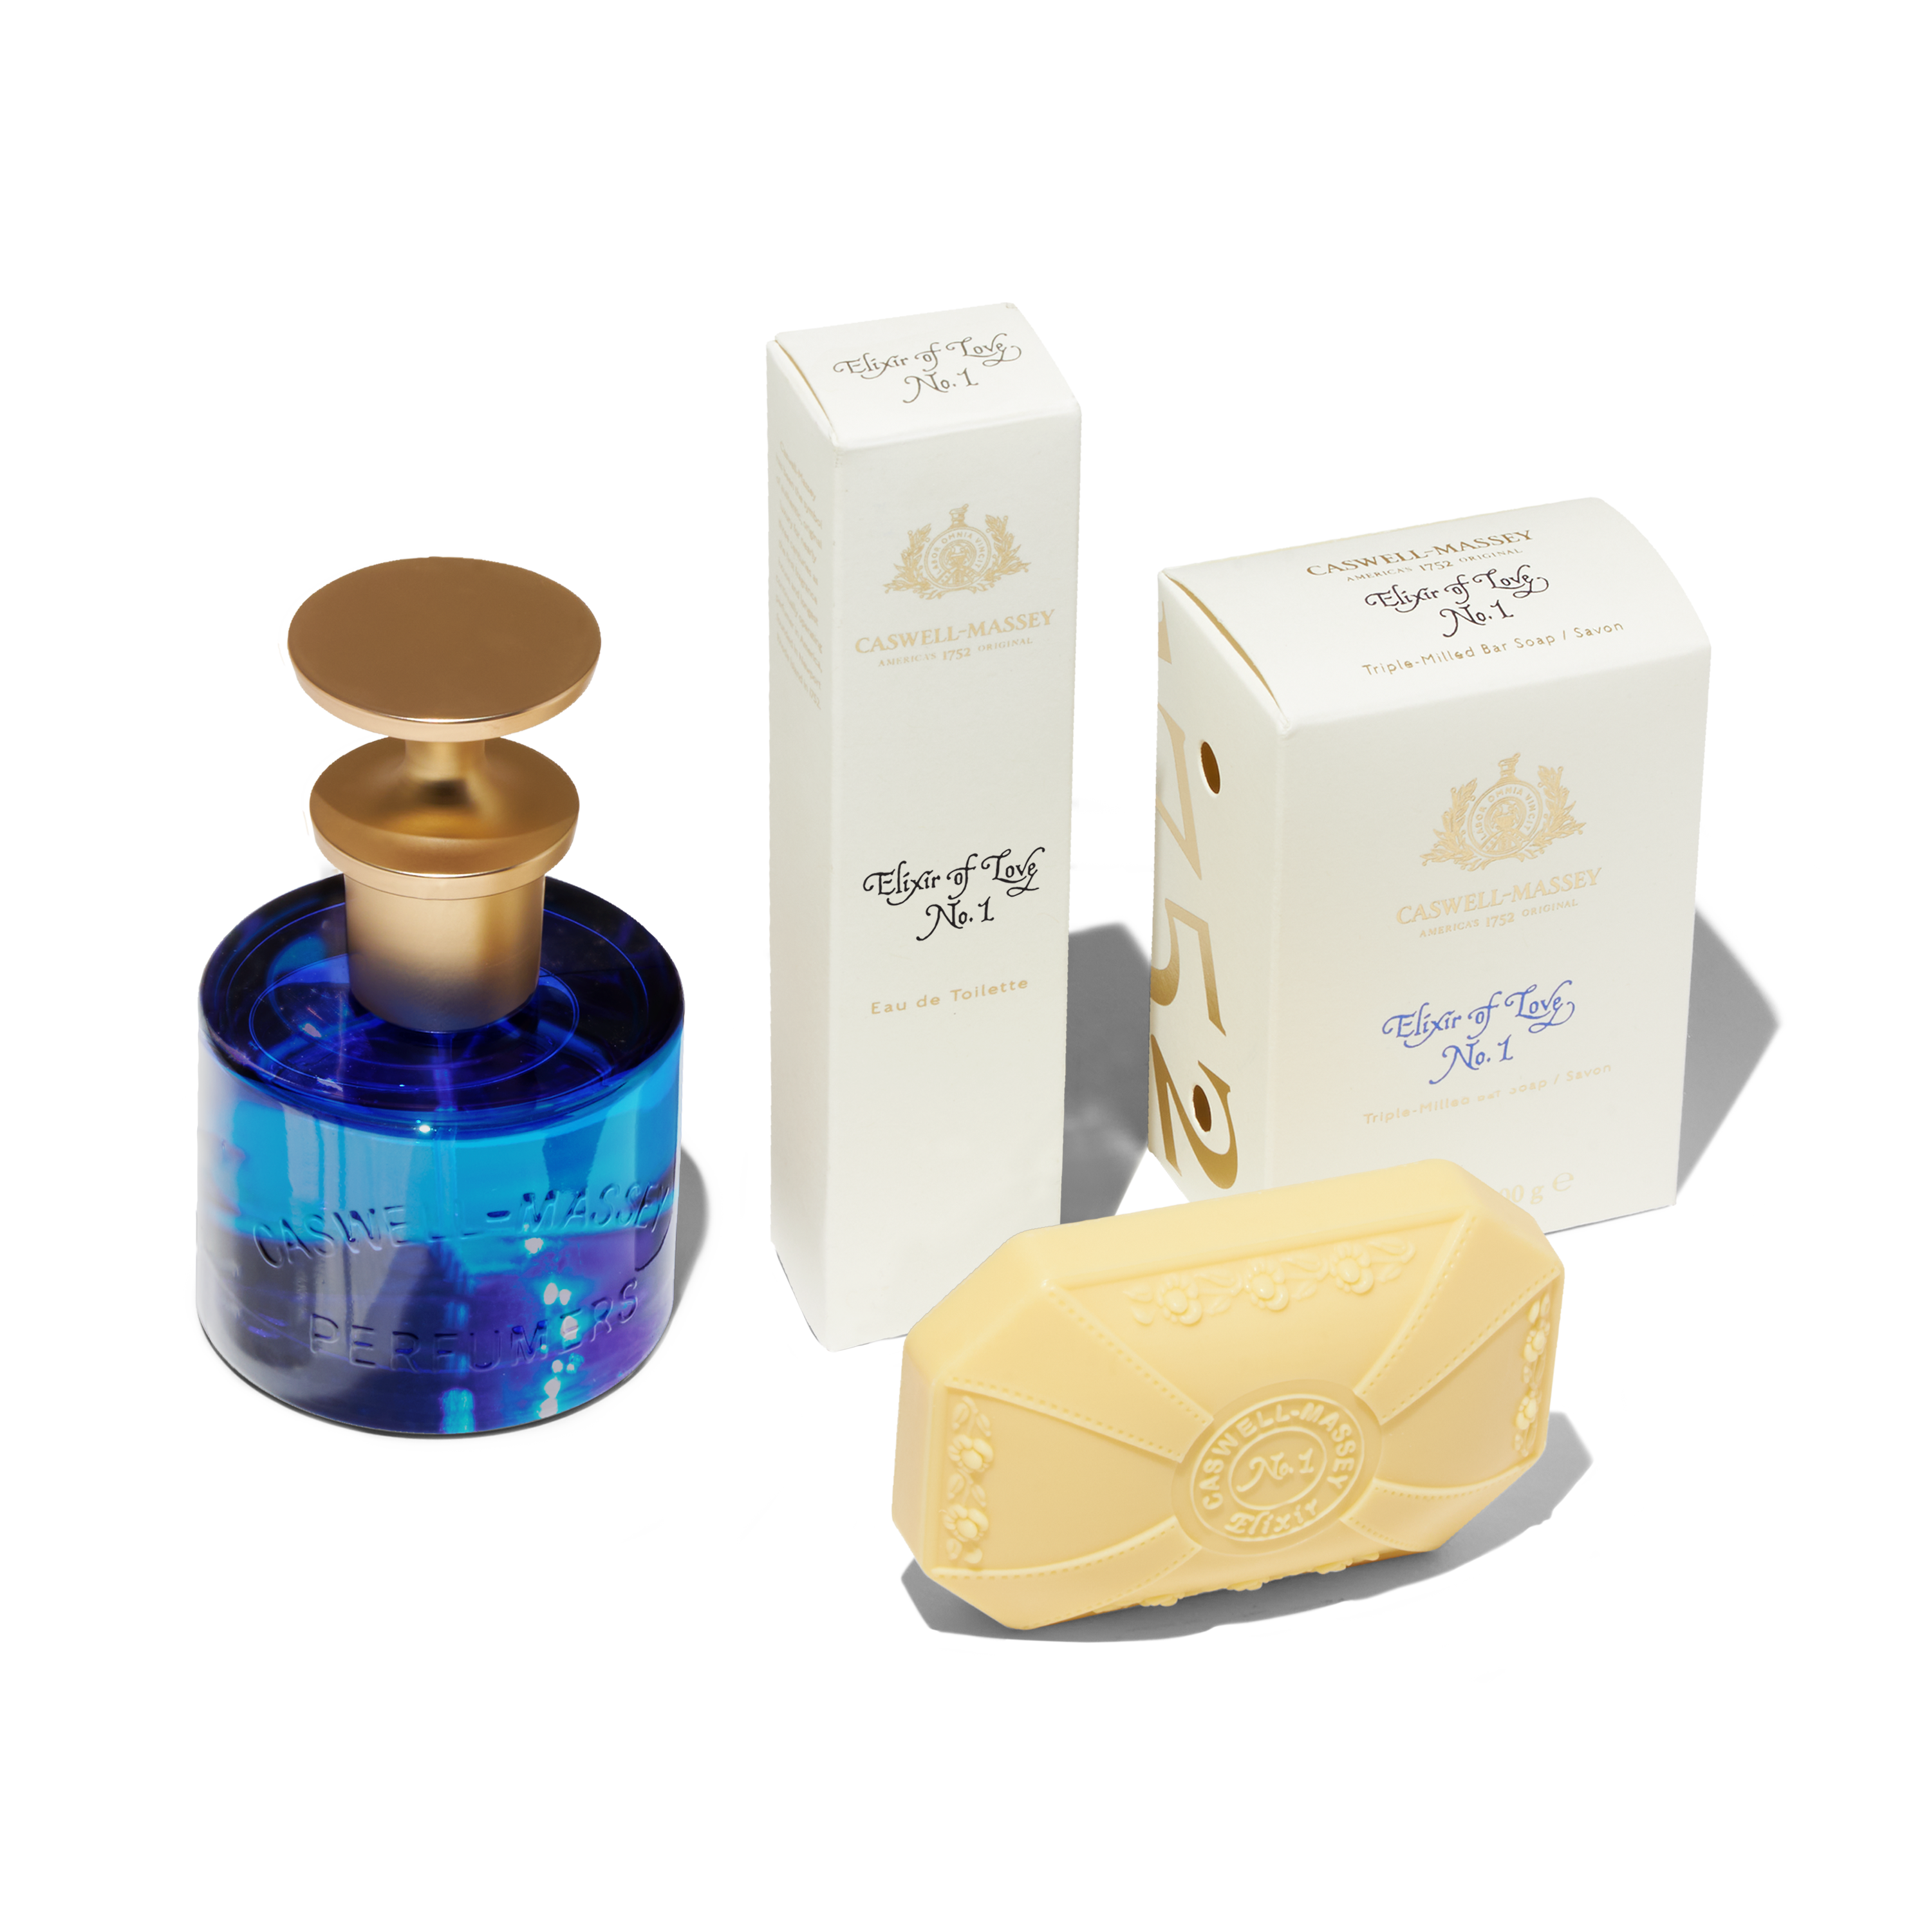 Elixir of Love Eau de Toilette for Women: showing full-size 60ml, travel-size 7.5ml, and Elixir of Love Bar Soap